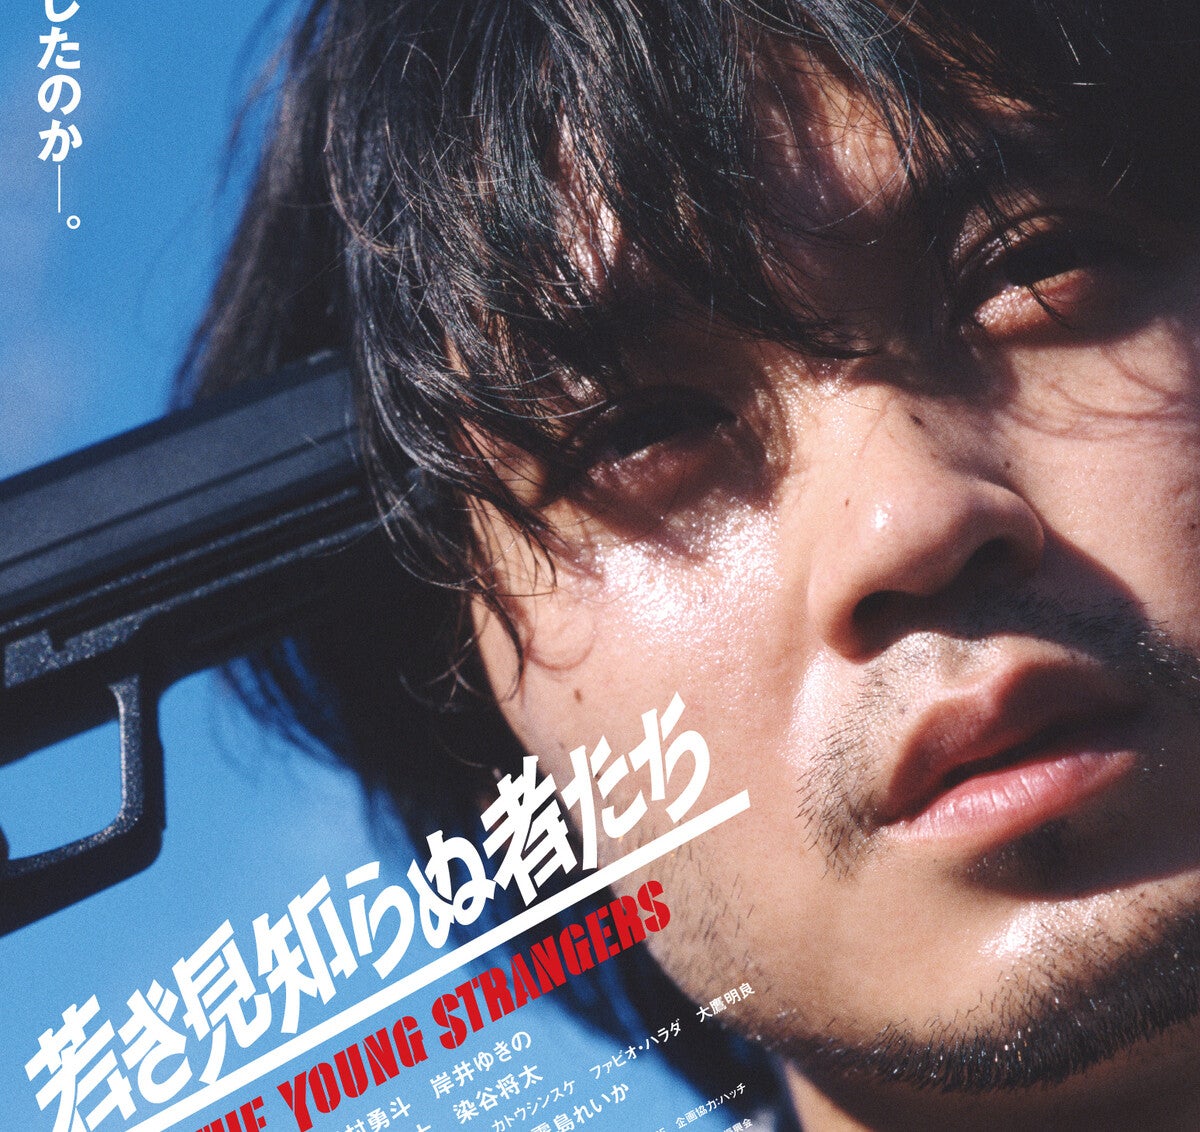 磯村勇斗、こめかみに銃をあて…死に呑みこまれる青年役『若き見知らぬ者たち』特報